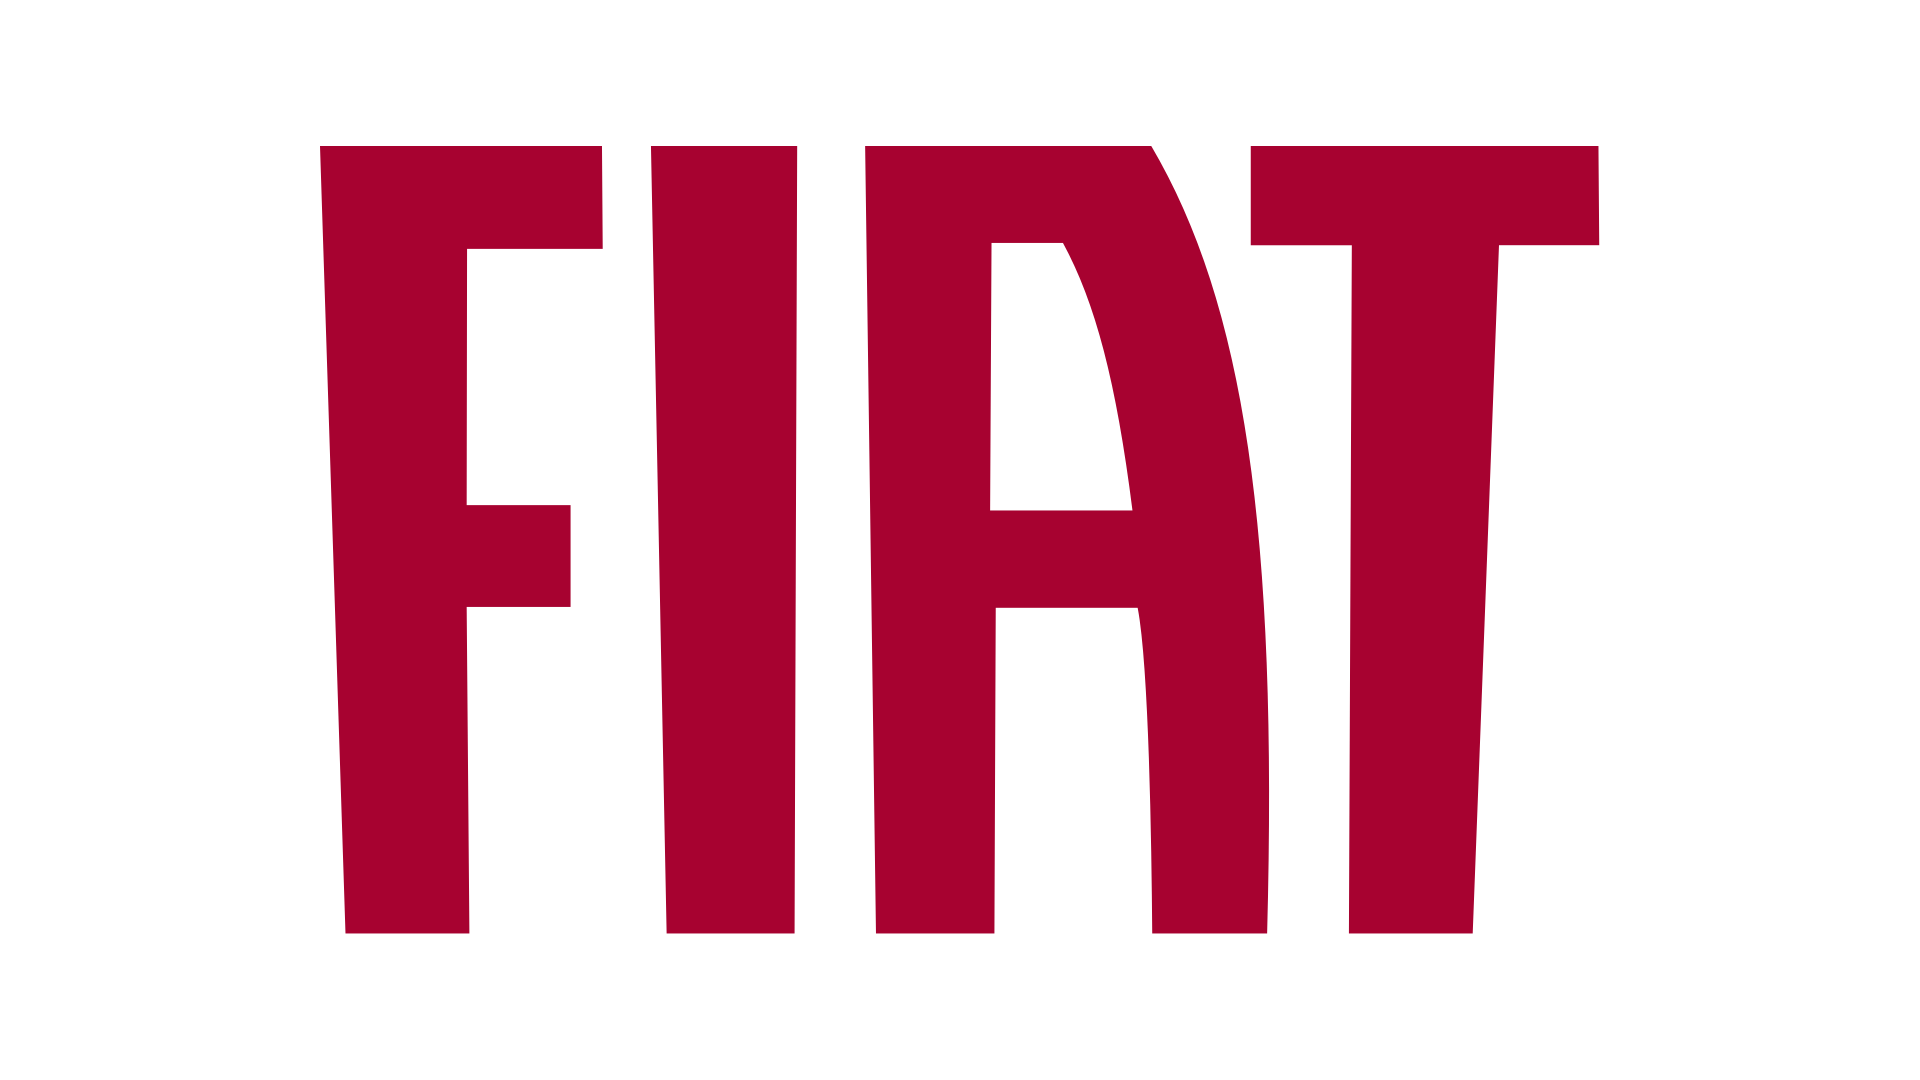 The Fiat Logo - History And E